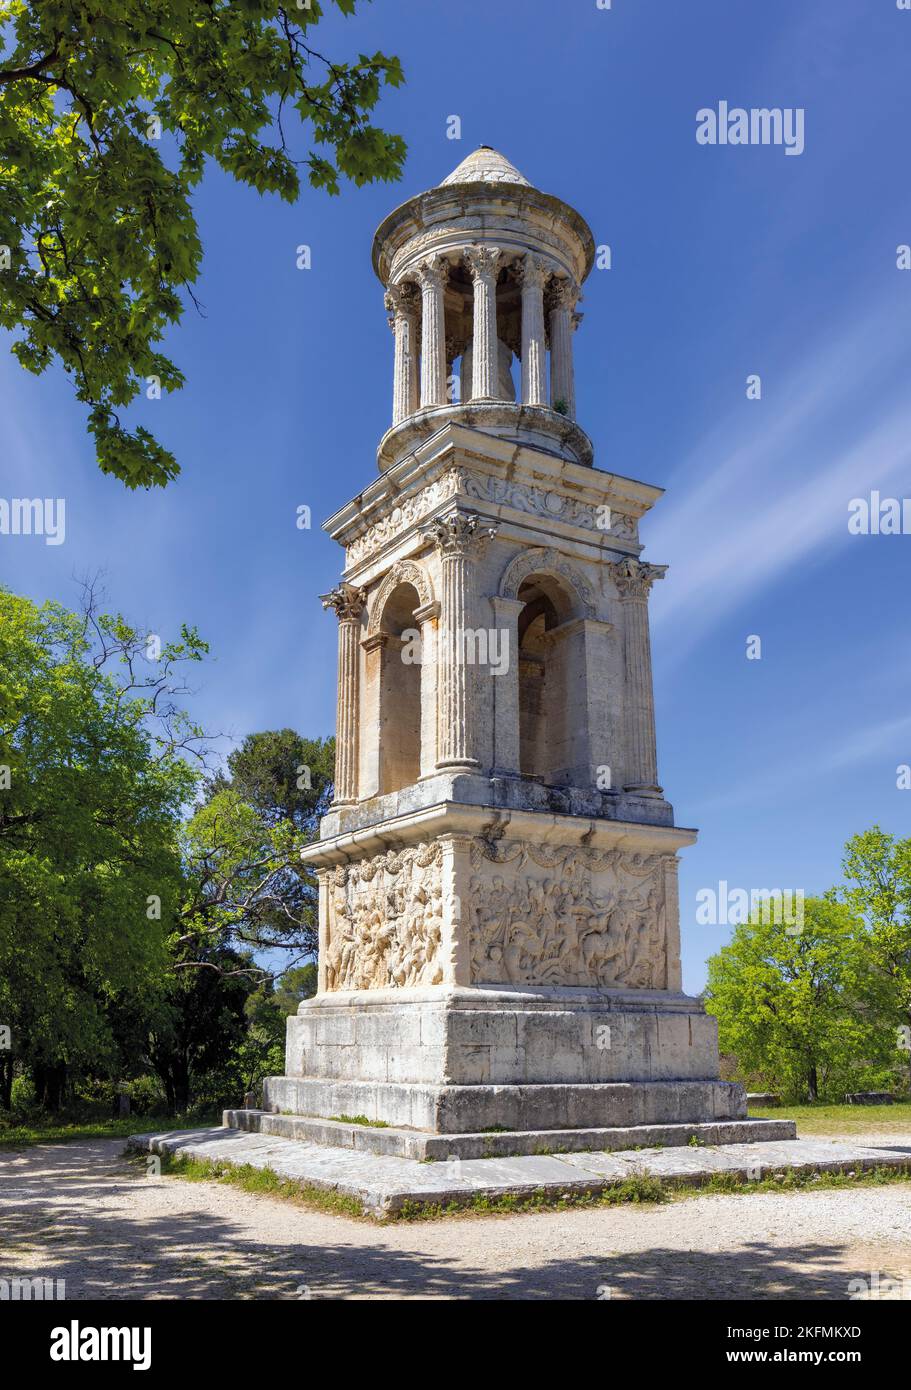 Saint-Rémy-de-Provence, Bouches-du-Rhône, Provenza, Francia. El mausoleo cerca de la entrada a la ciudad romana de Glanum. Se piensa a partir de la fecha Foto de stock